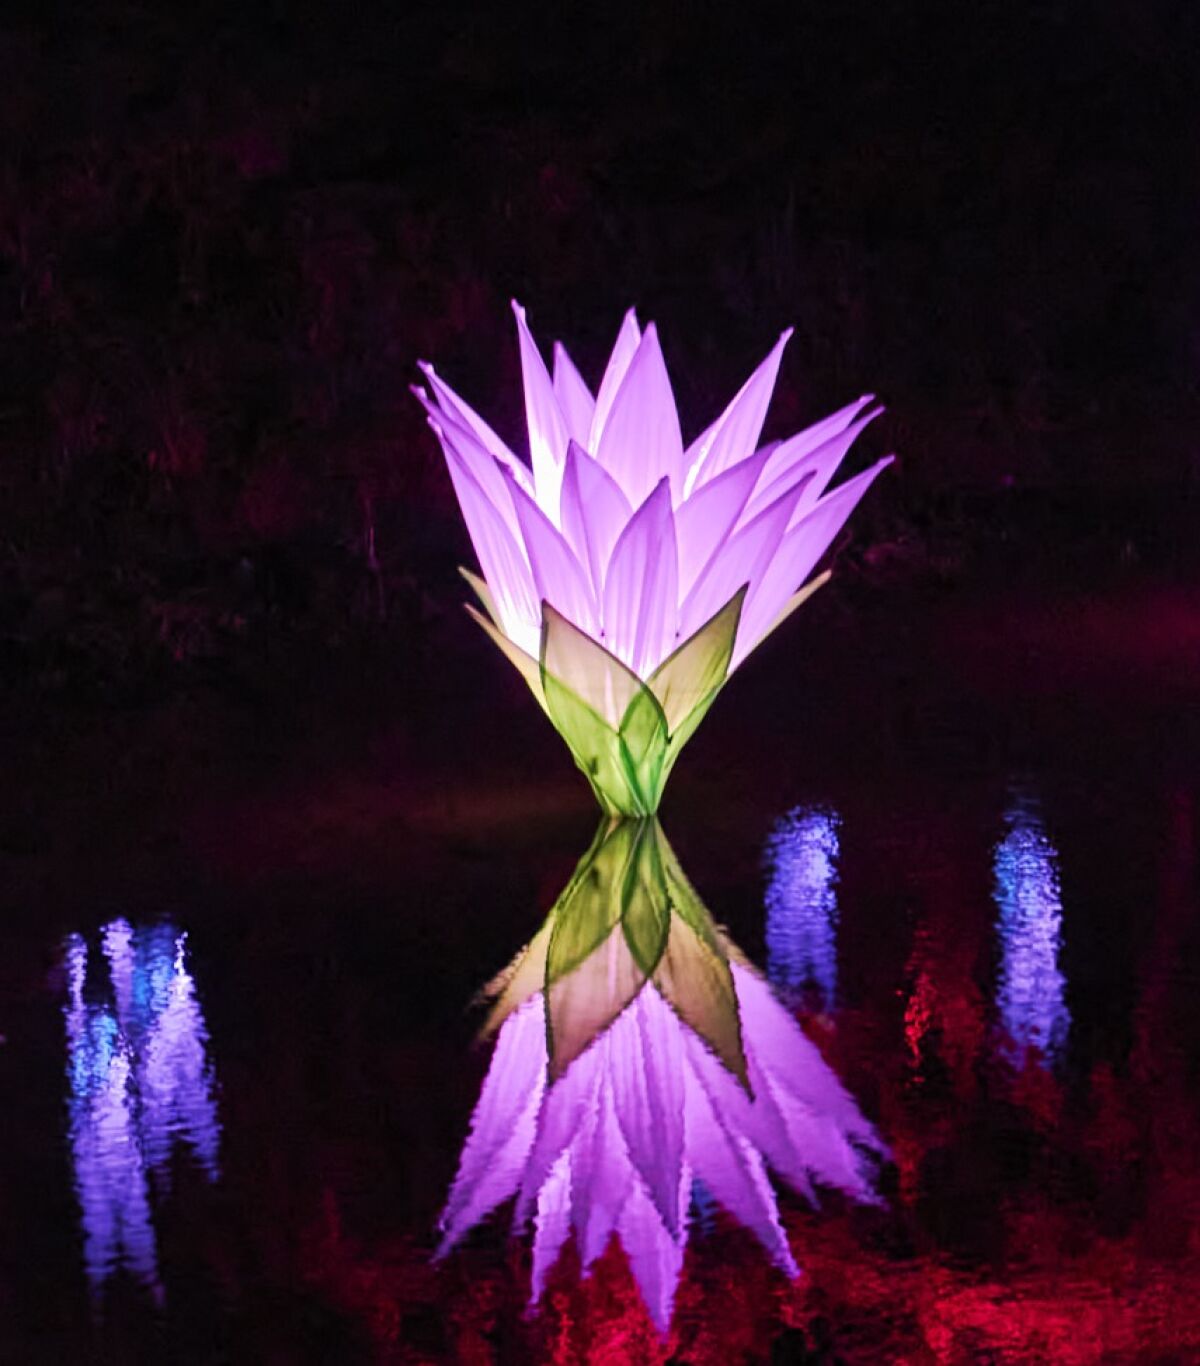 Una escultura iluminada en forma de lirio se refleja en el agua